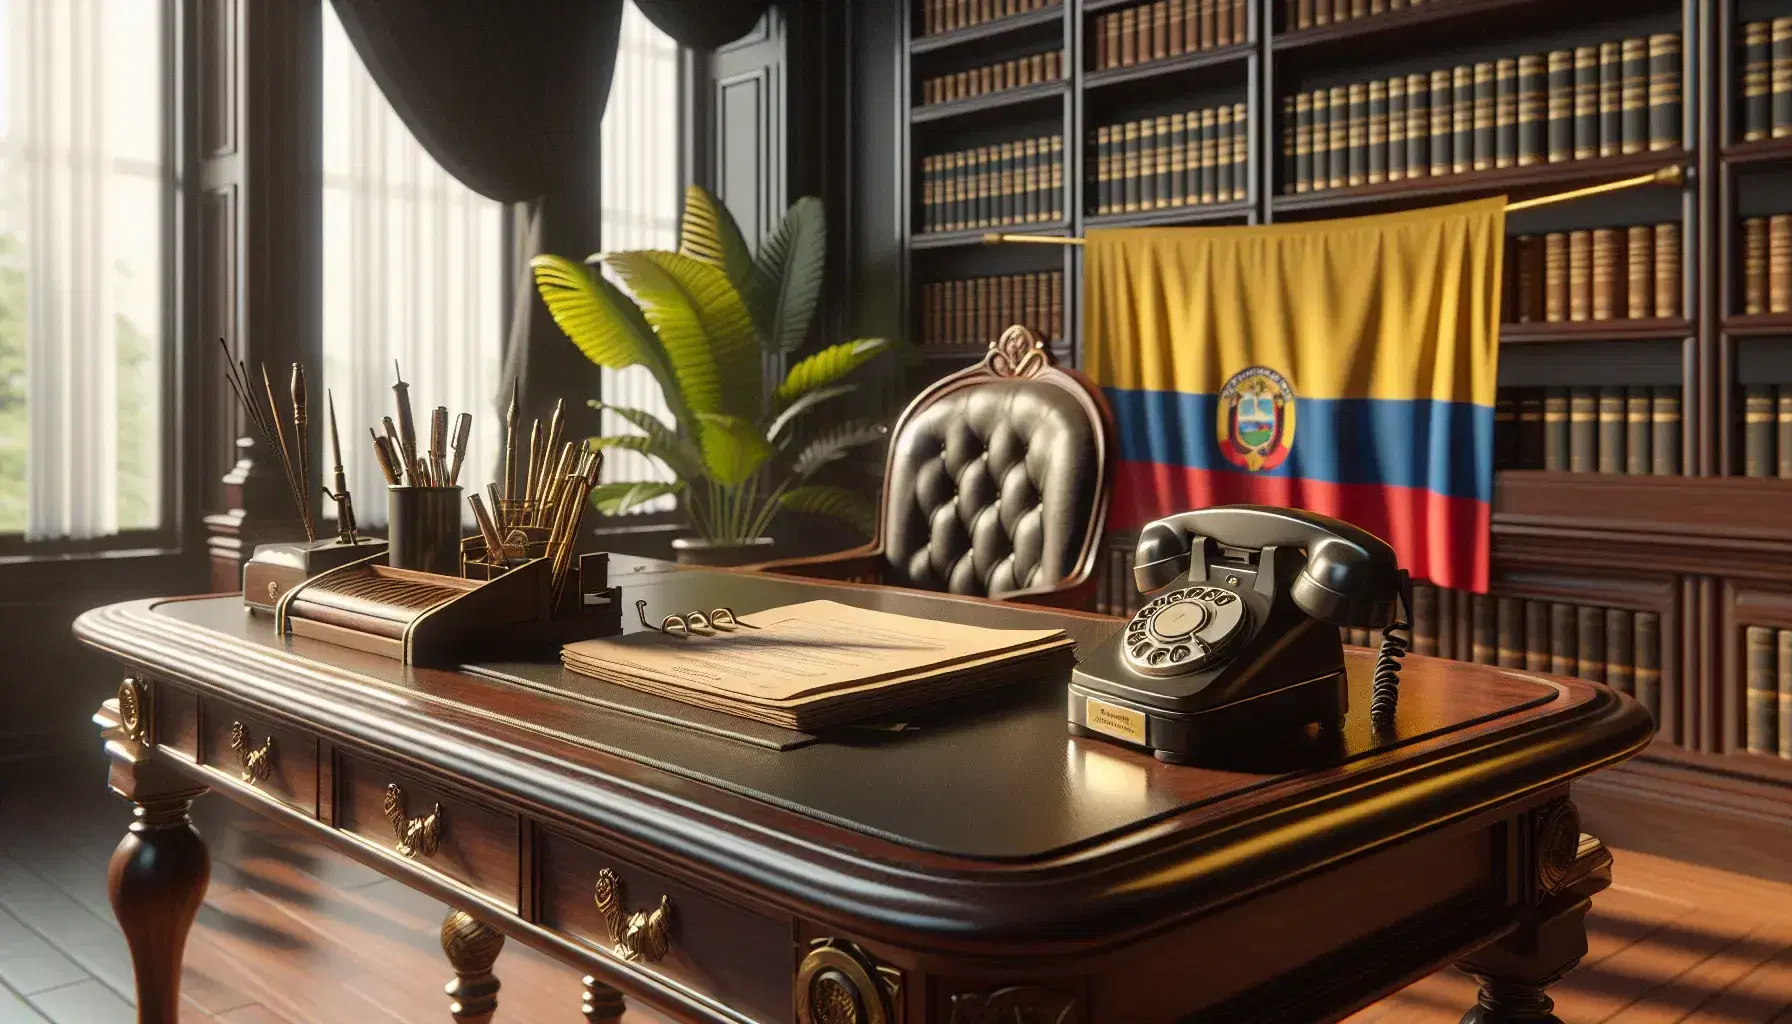 Escritorio de madera pulida en oficina gubernamental con teléfono antiguo, bandera de Colombia y silla de cuero, iluminado por lámpara de pie.